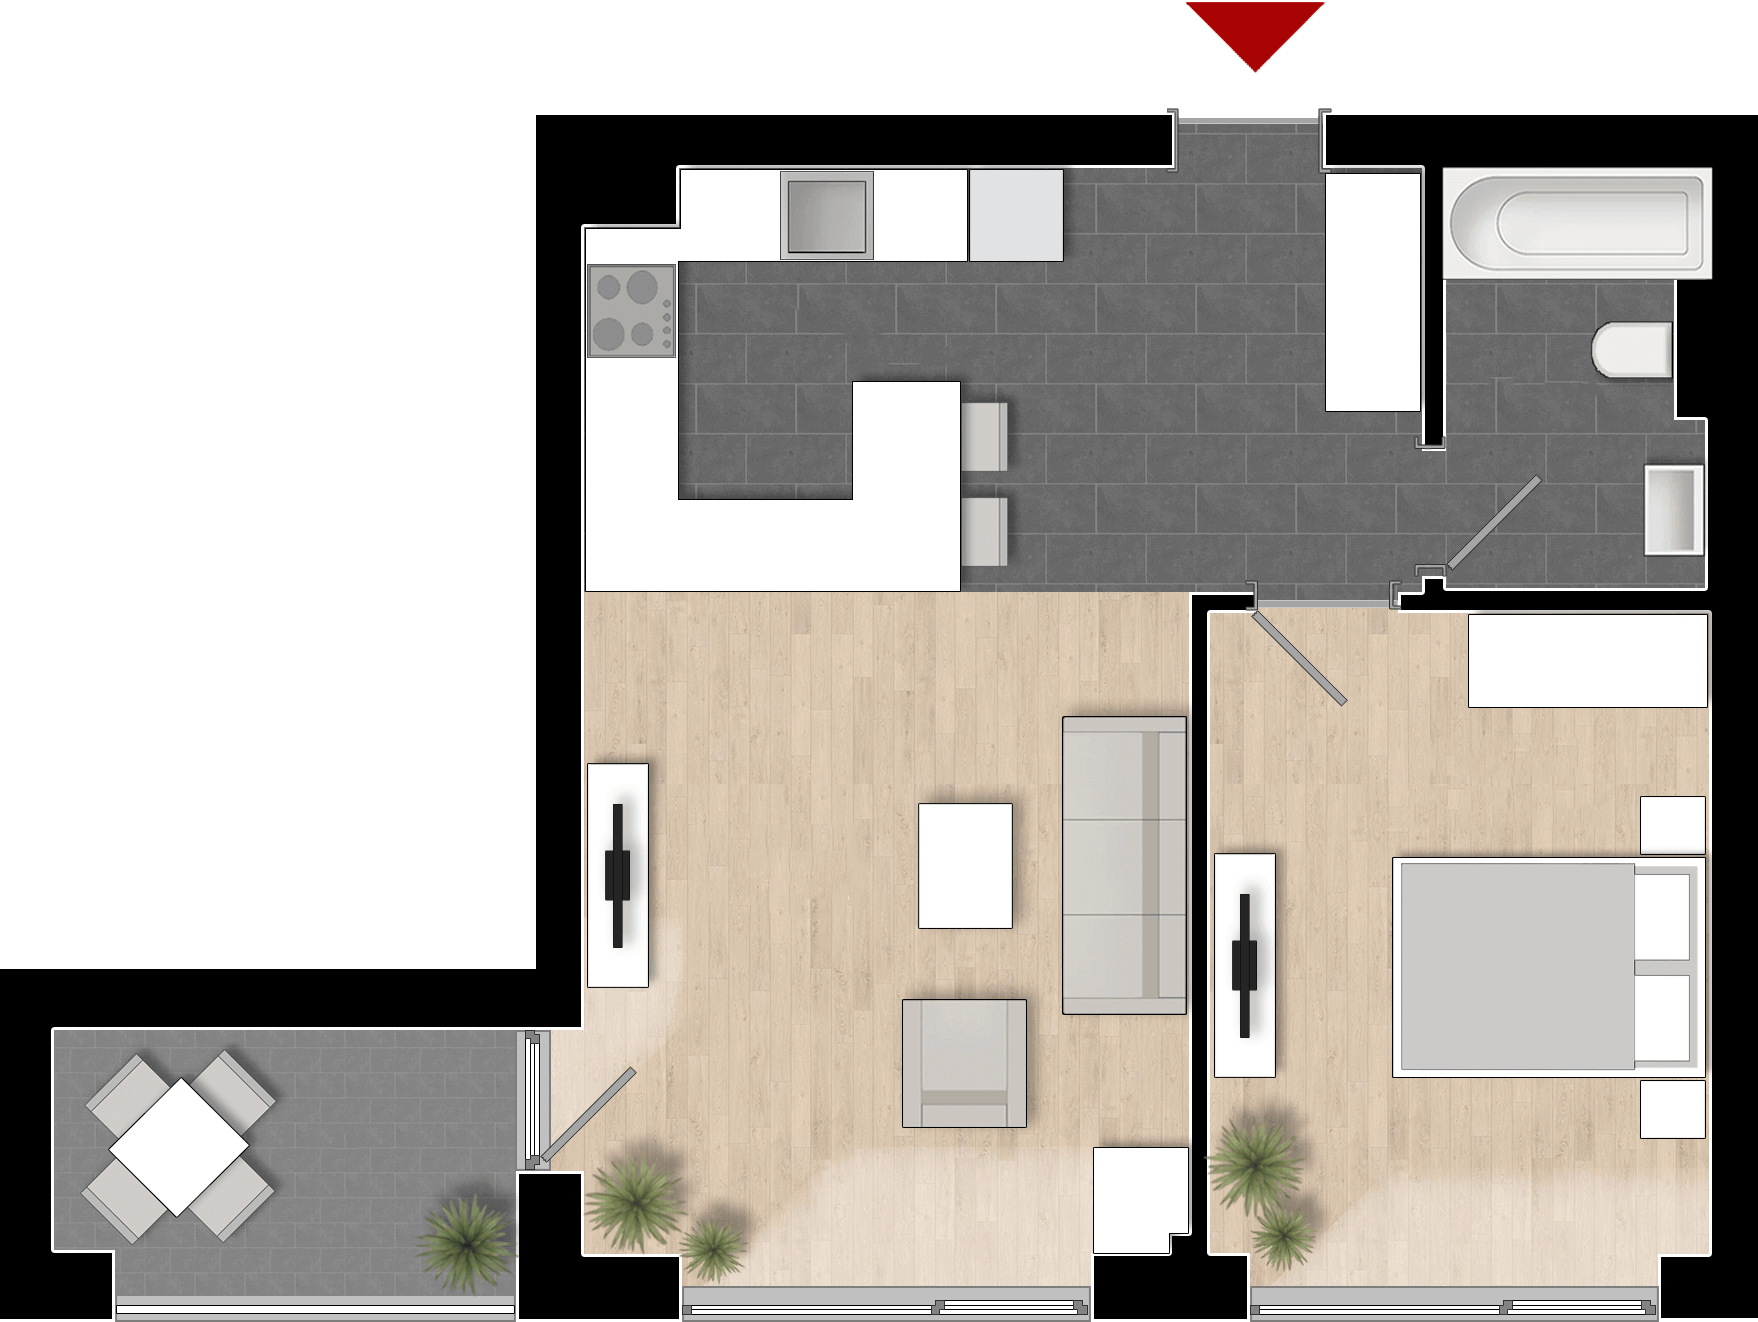  Apartament 412, Tip de apartament 1A cu 2 camere 